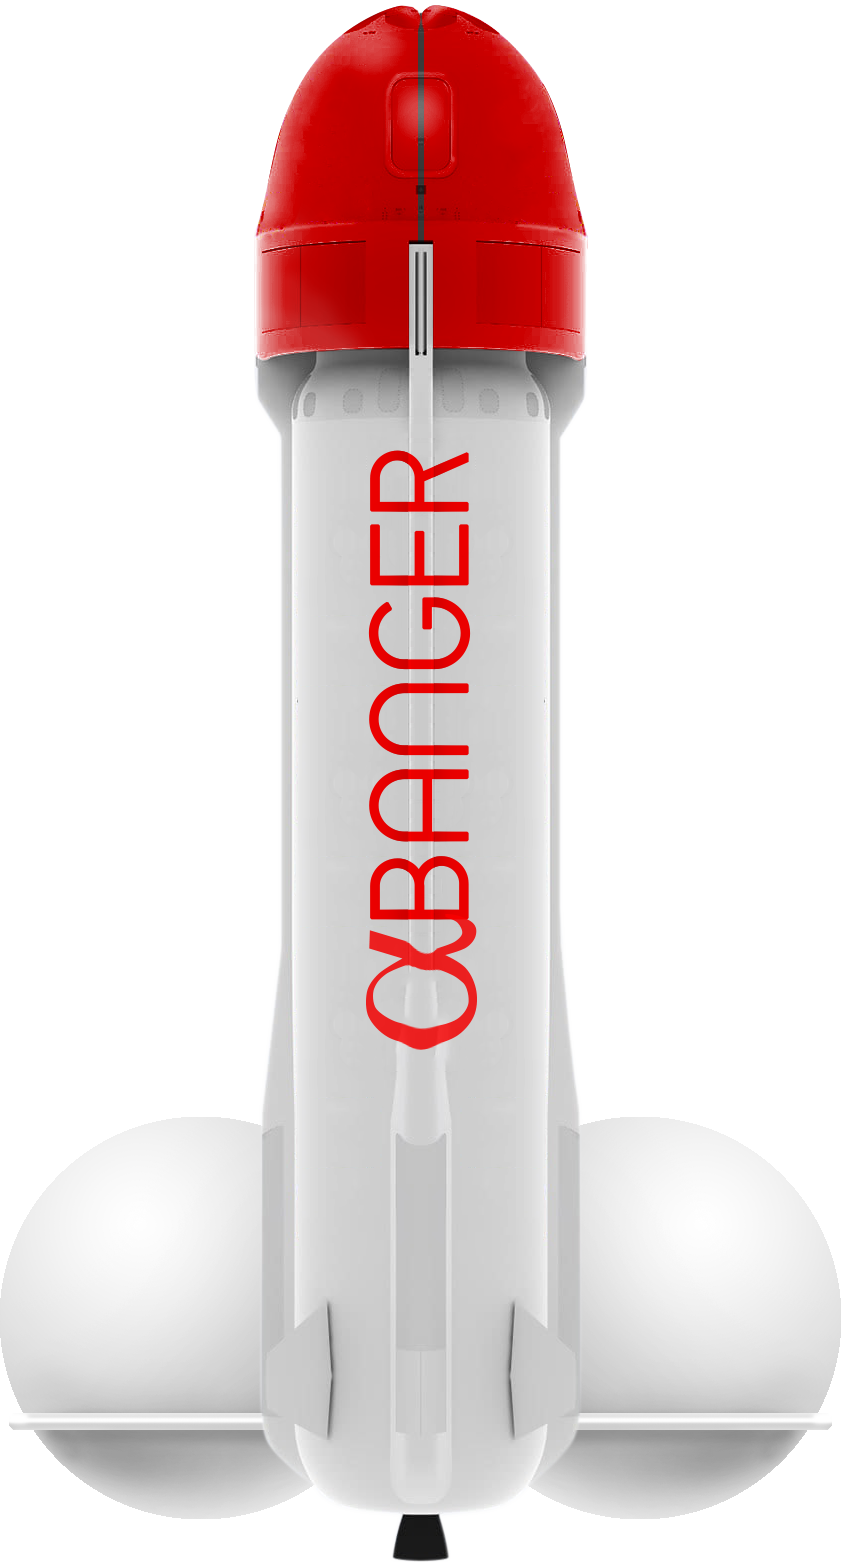 VR Bangers alpha rocket